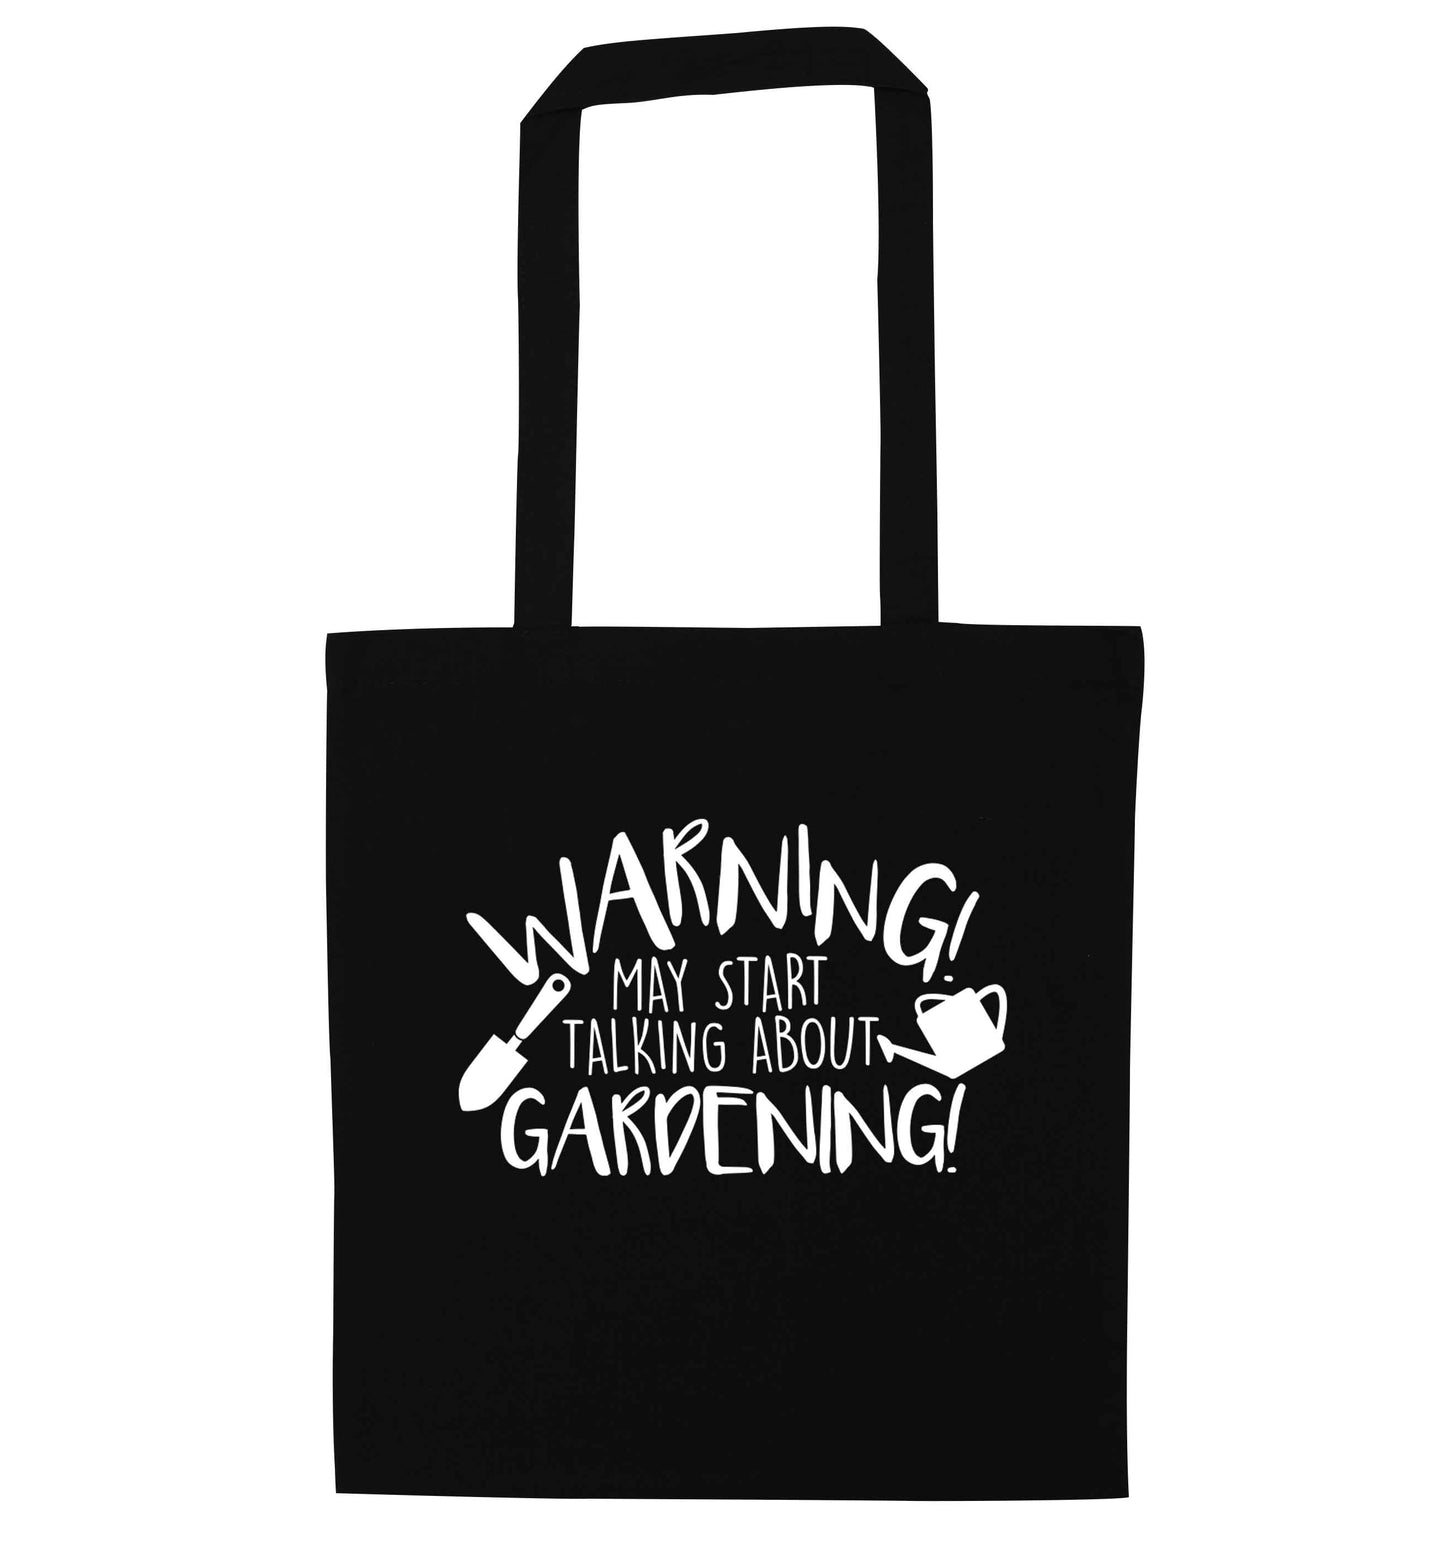 Warning may start talking about gardening black tote bag